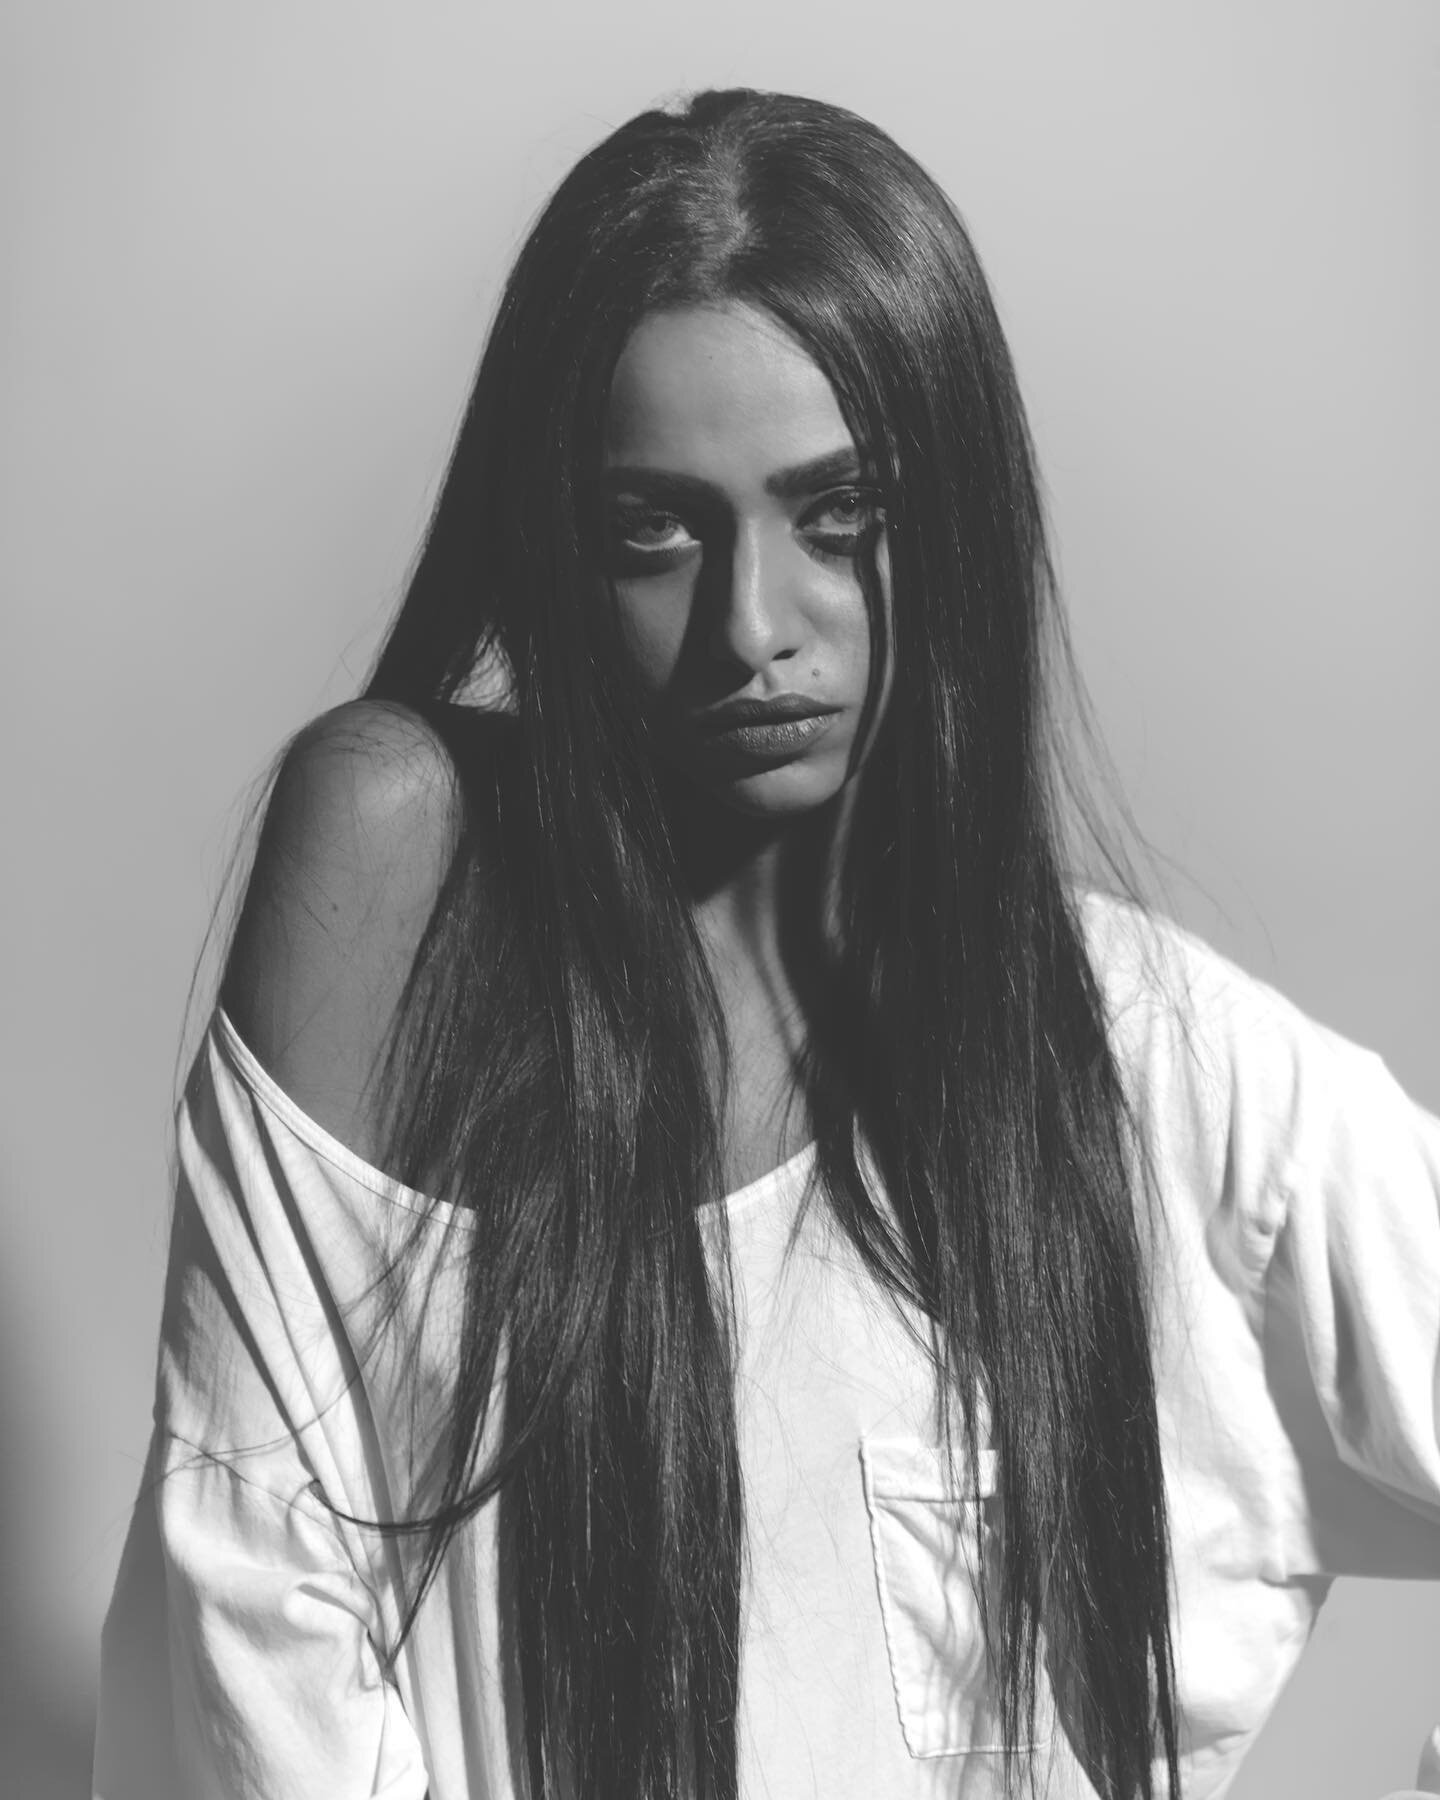 Rawda II 

#photography #portrait #jeddah #saudiarabia #model #blackandwhite